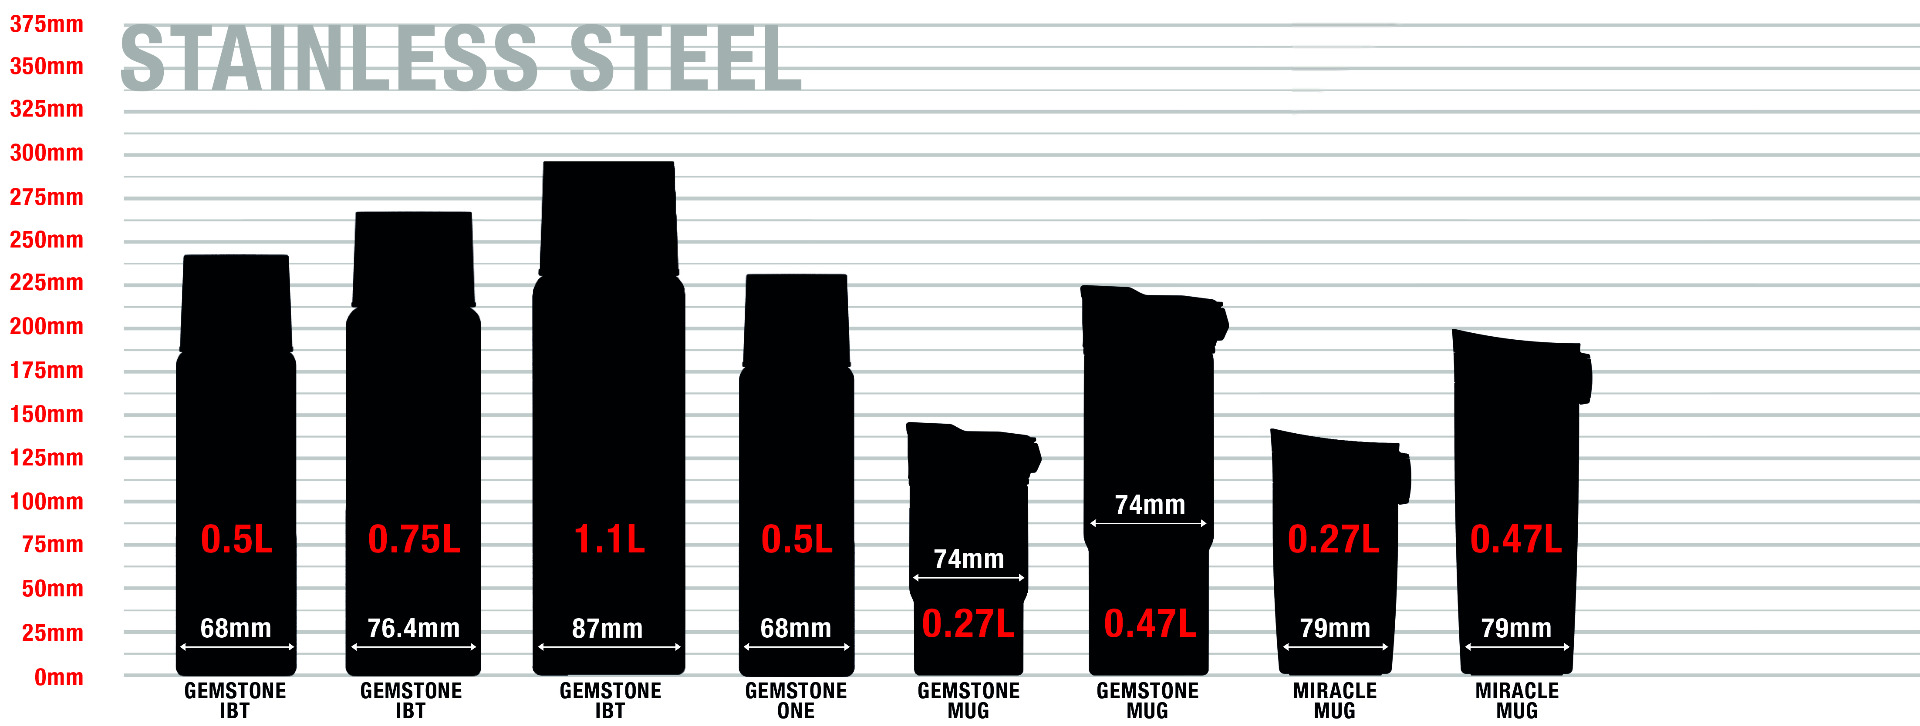 Stainless Steel Bottles sizes